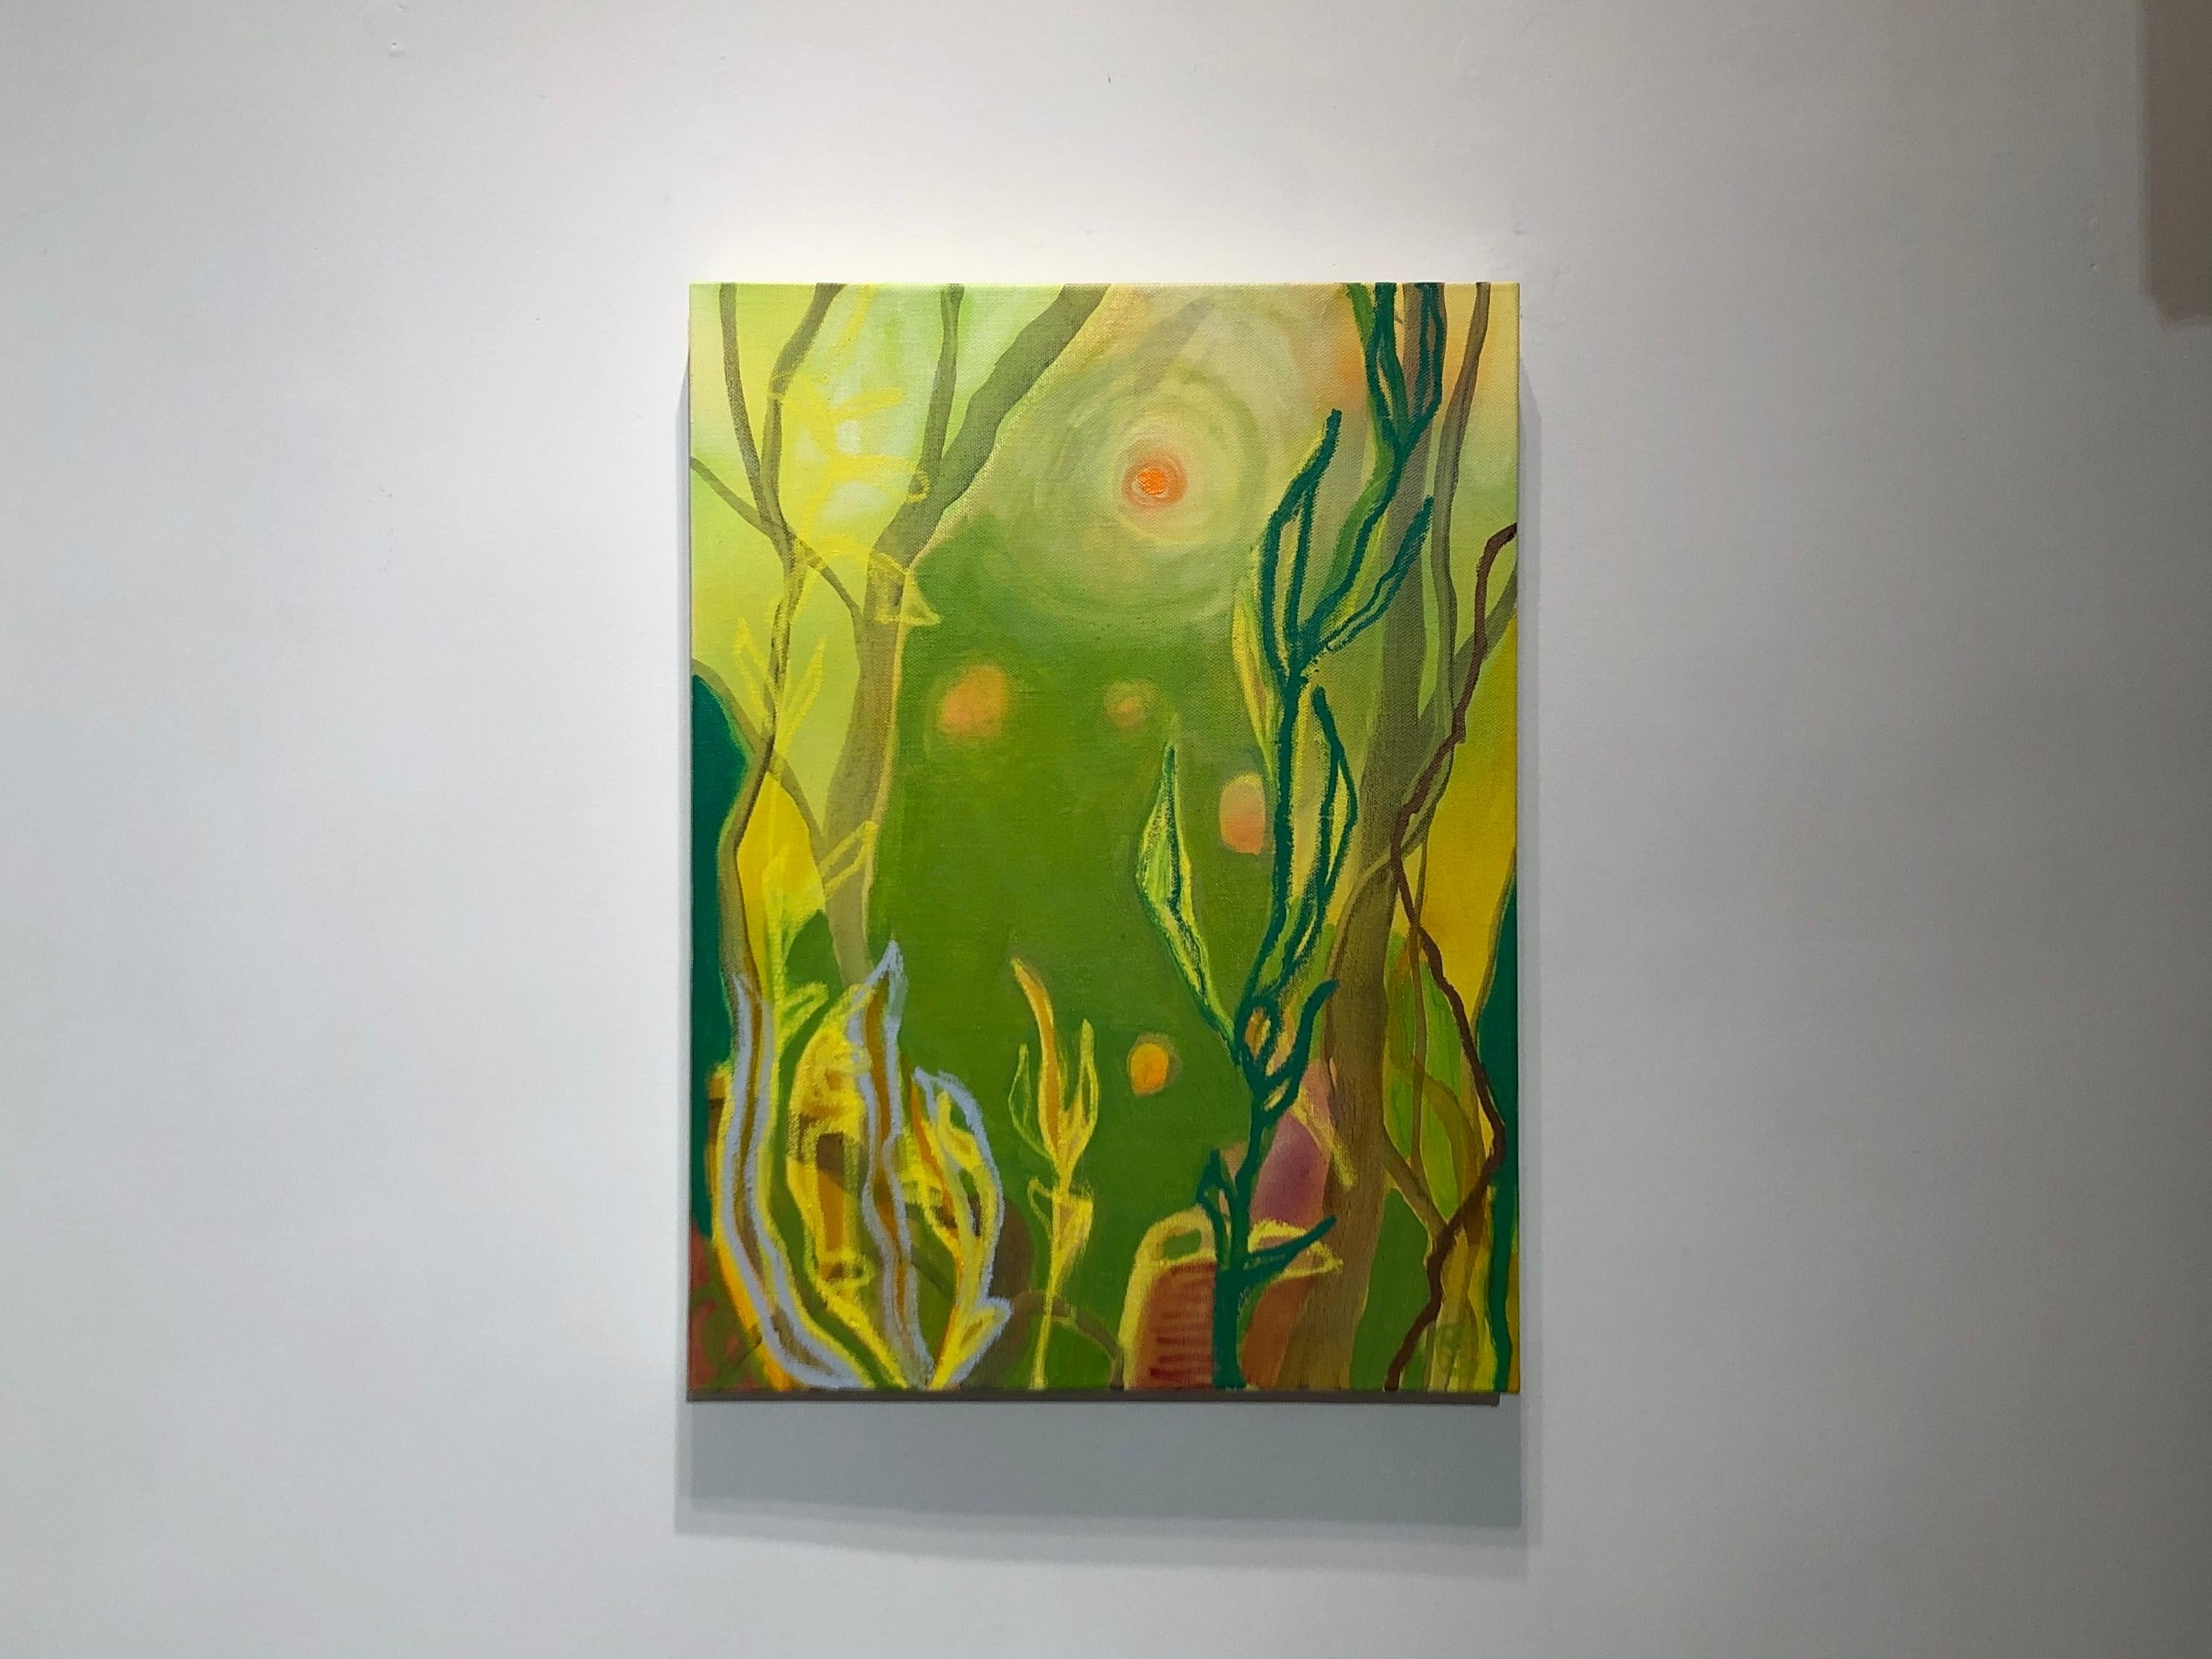 Abstrahierte Landschaft mit toxistischem Wasserfall und Wildblumen, leuchtend grüne und gelbe Abstraktion – Painting von Rachelle Krieger